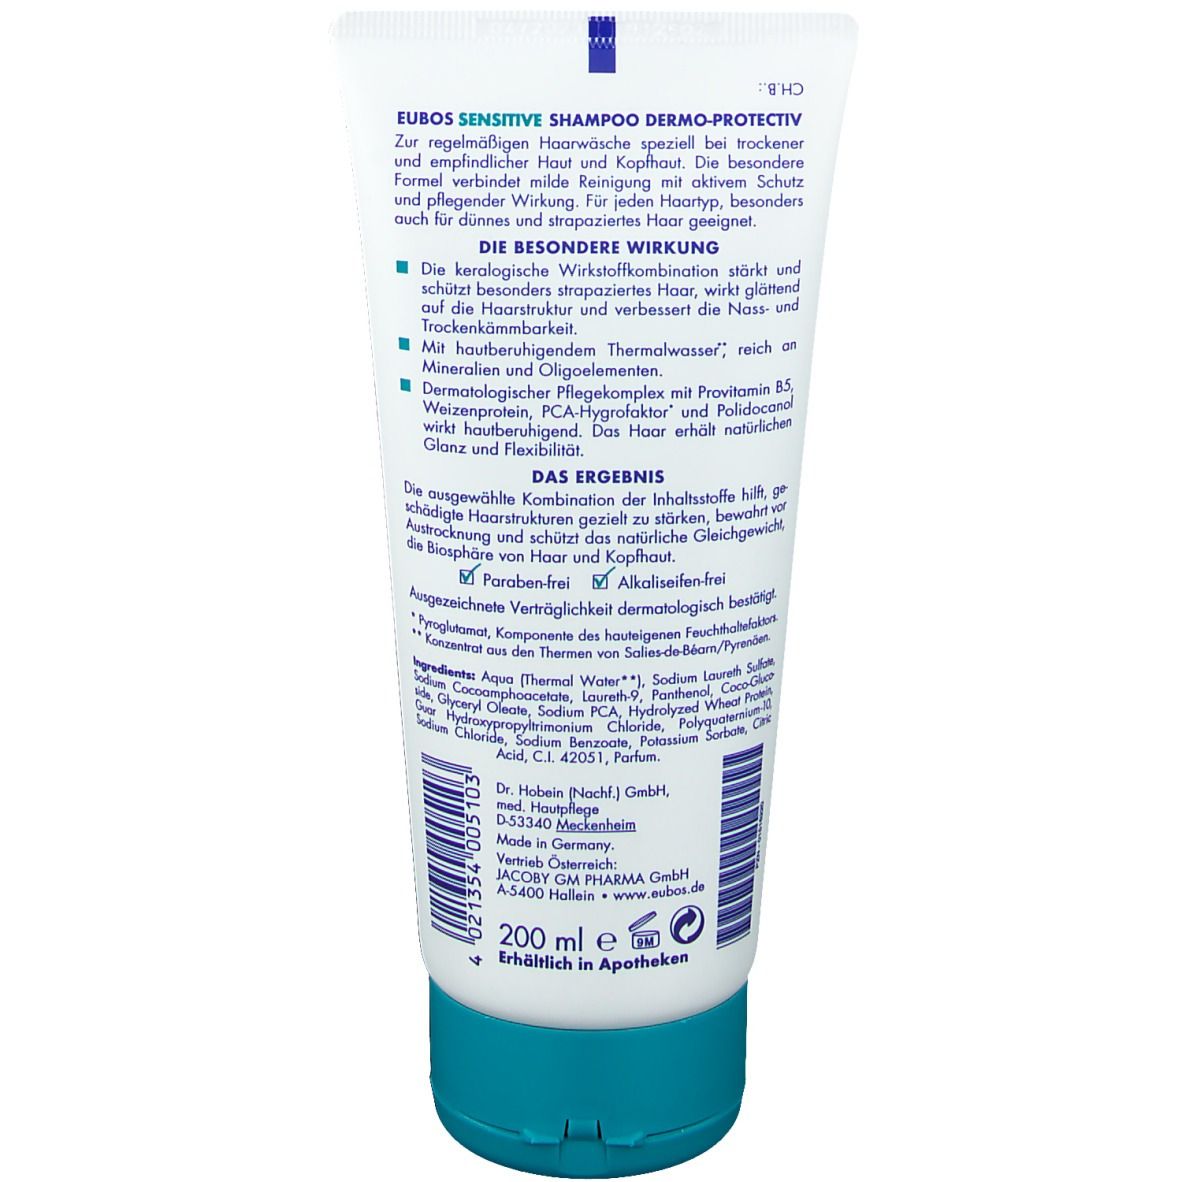 EUBOS® Sensitive Shampoo Dermo Protectiv